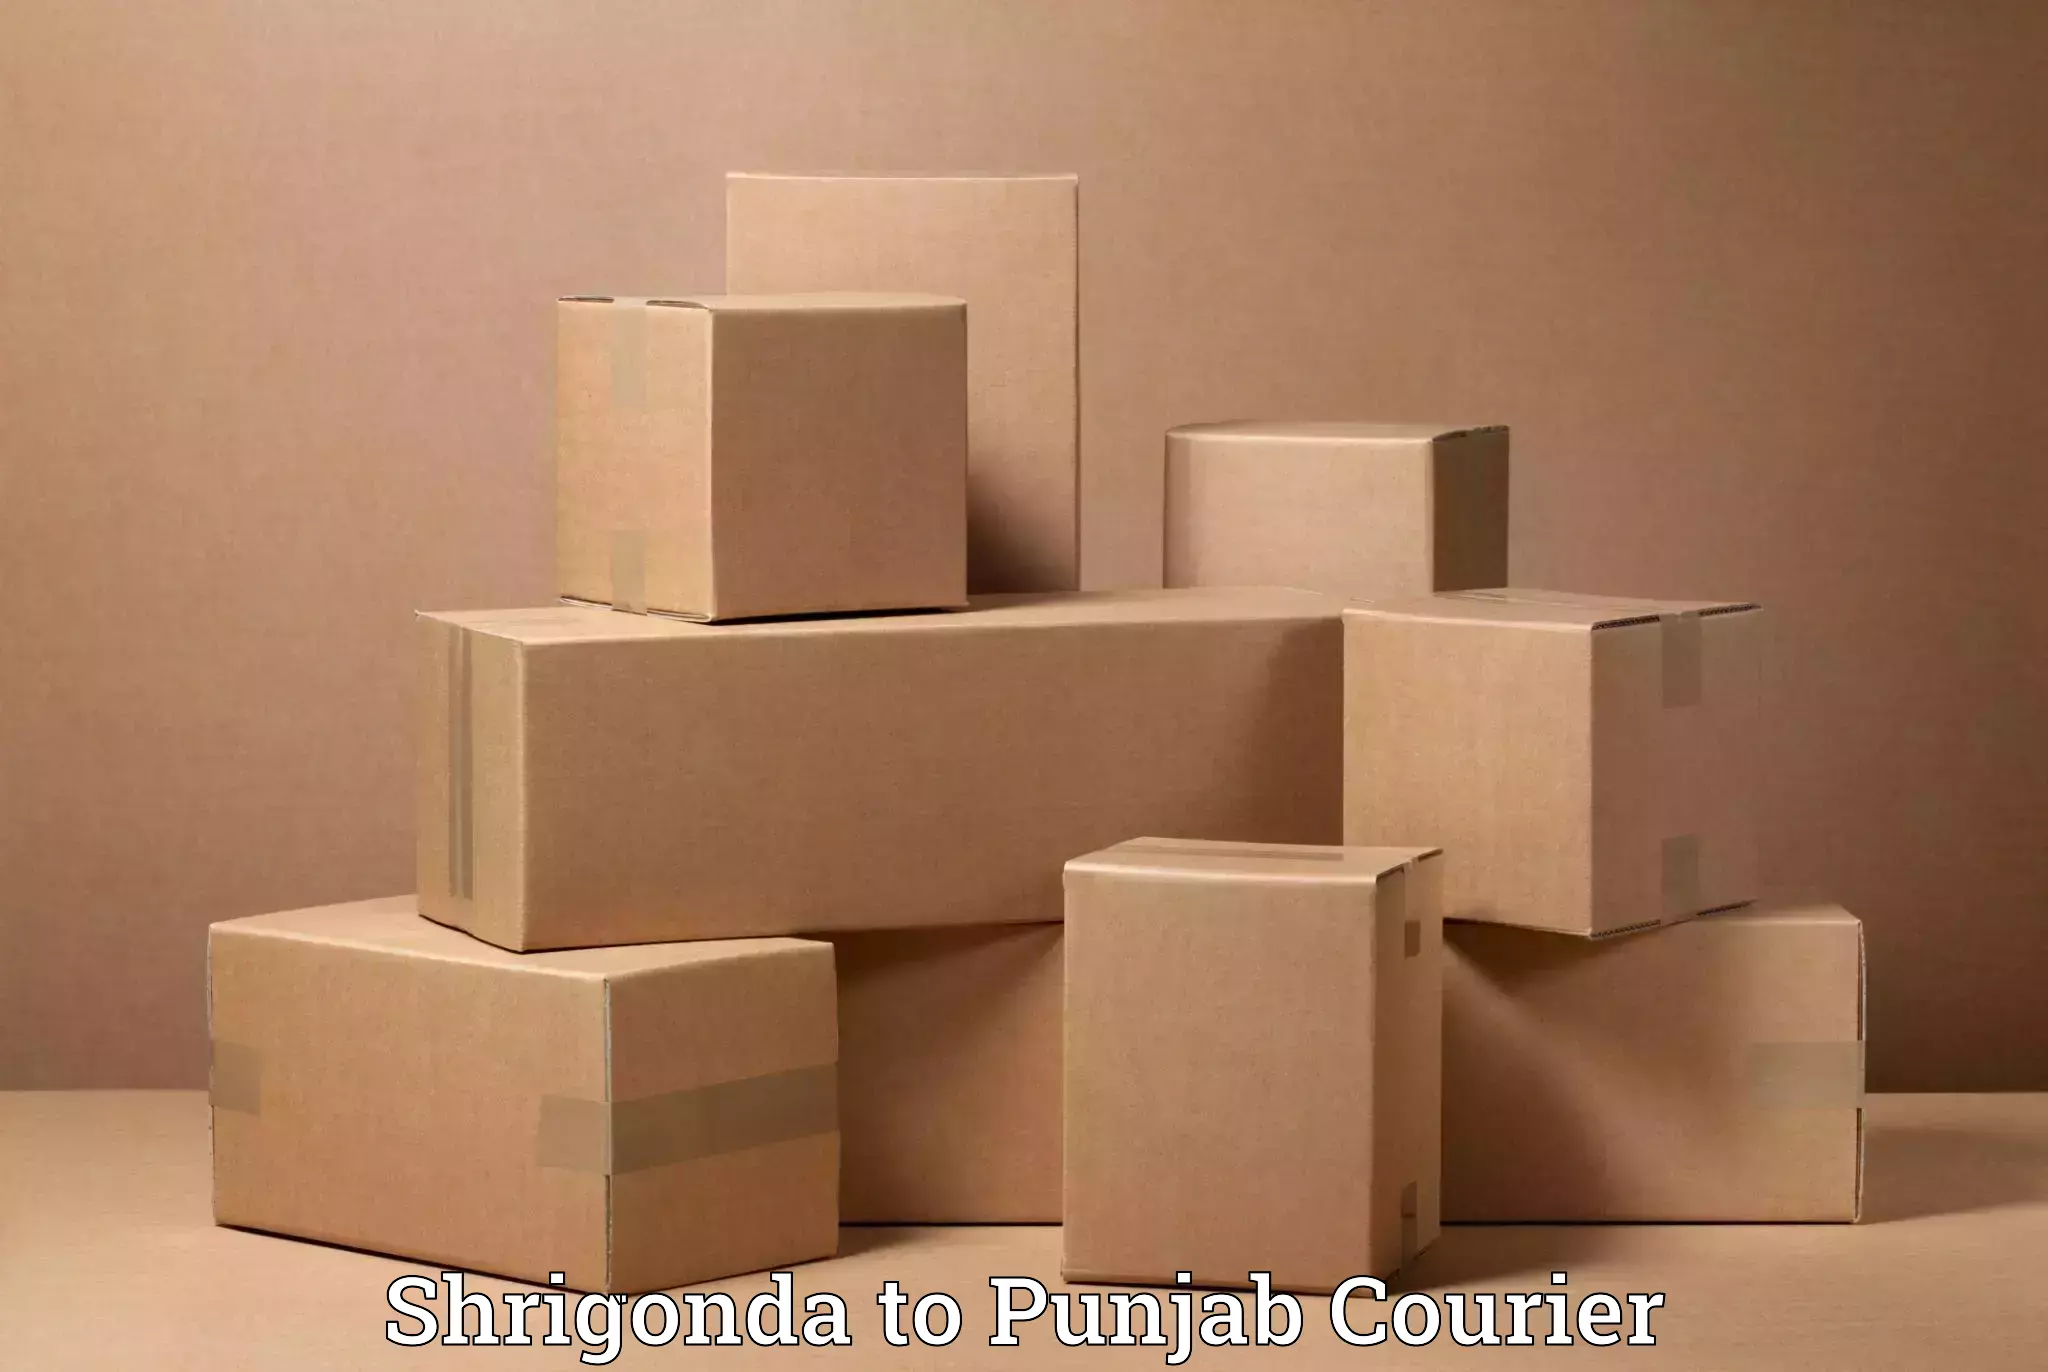 Professional packing services Shrigonda to Samana